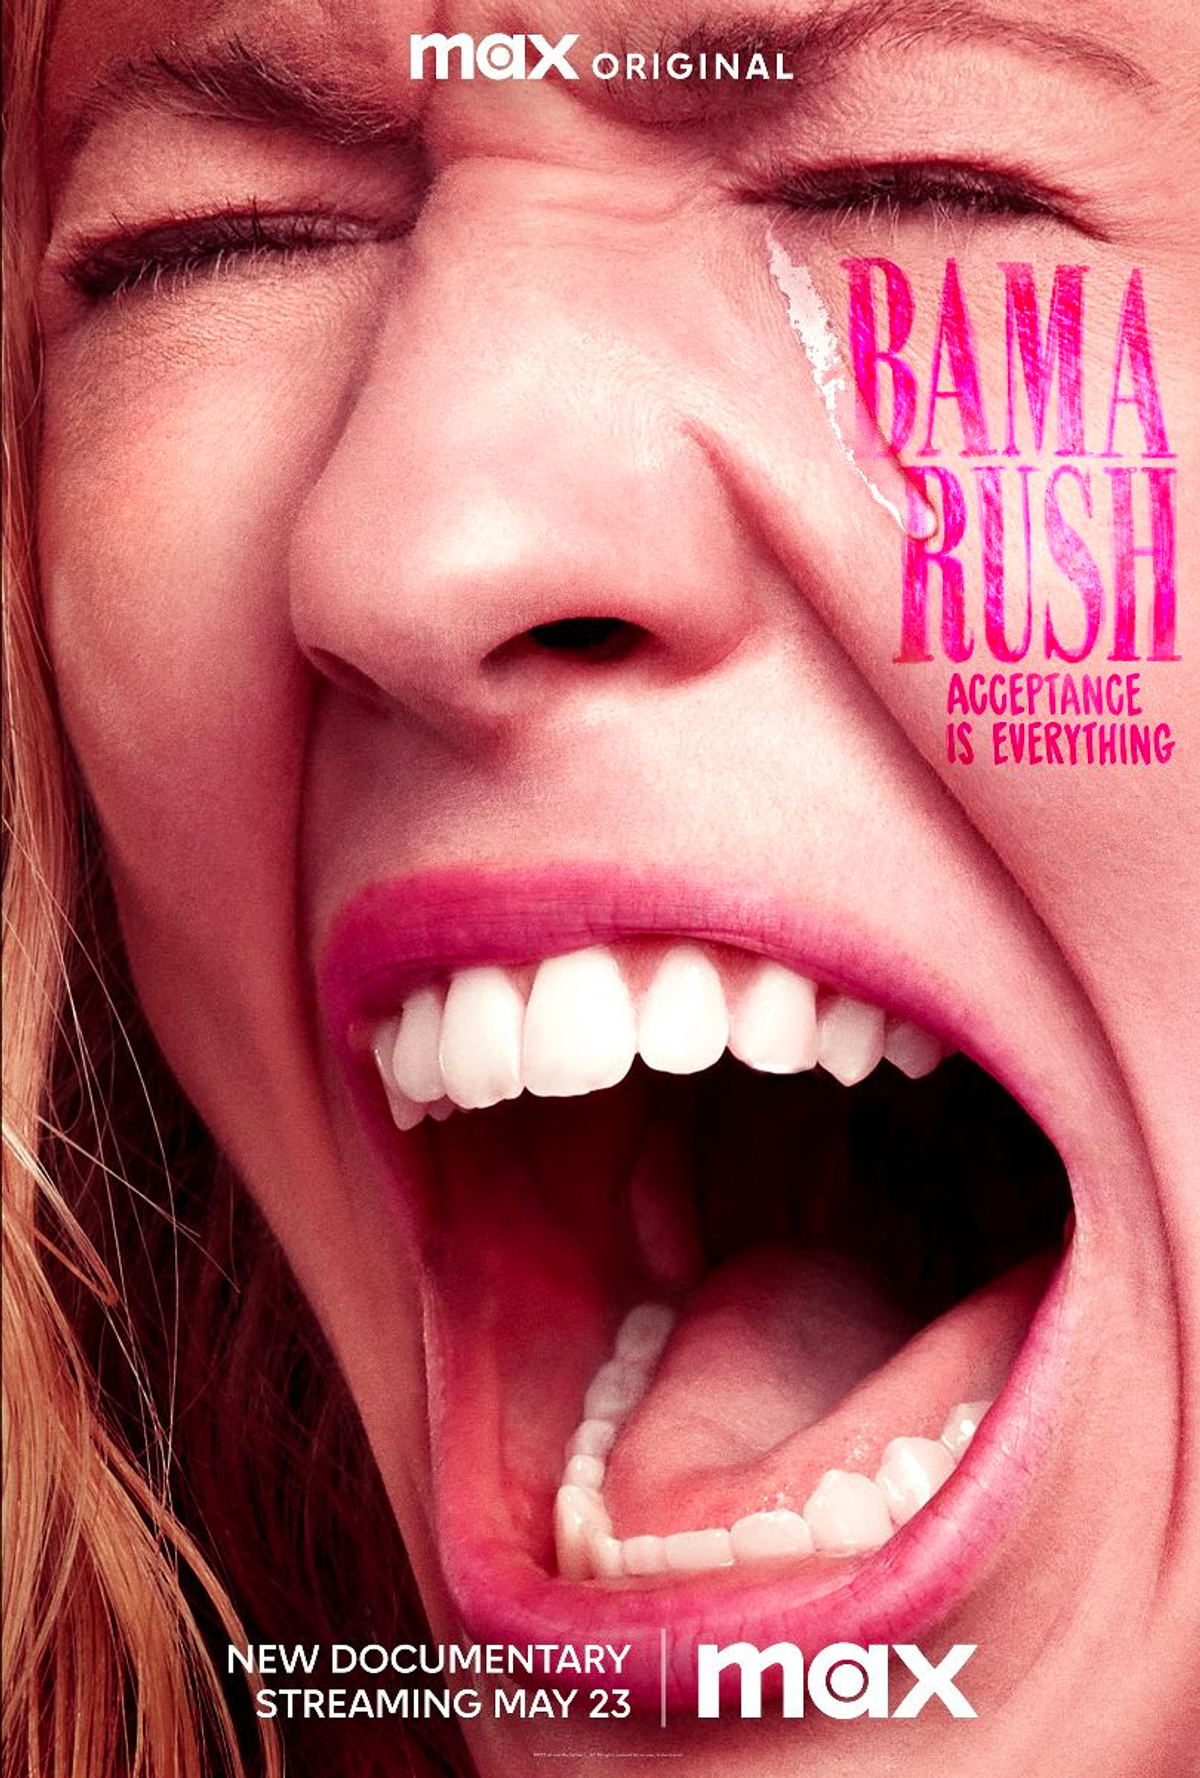 Bama Rush documentary 